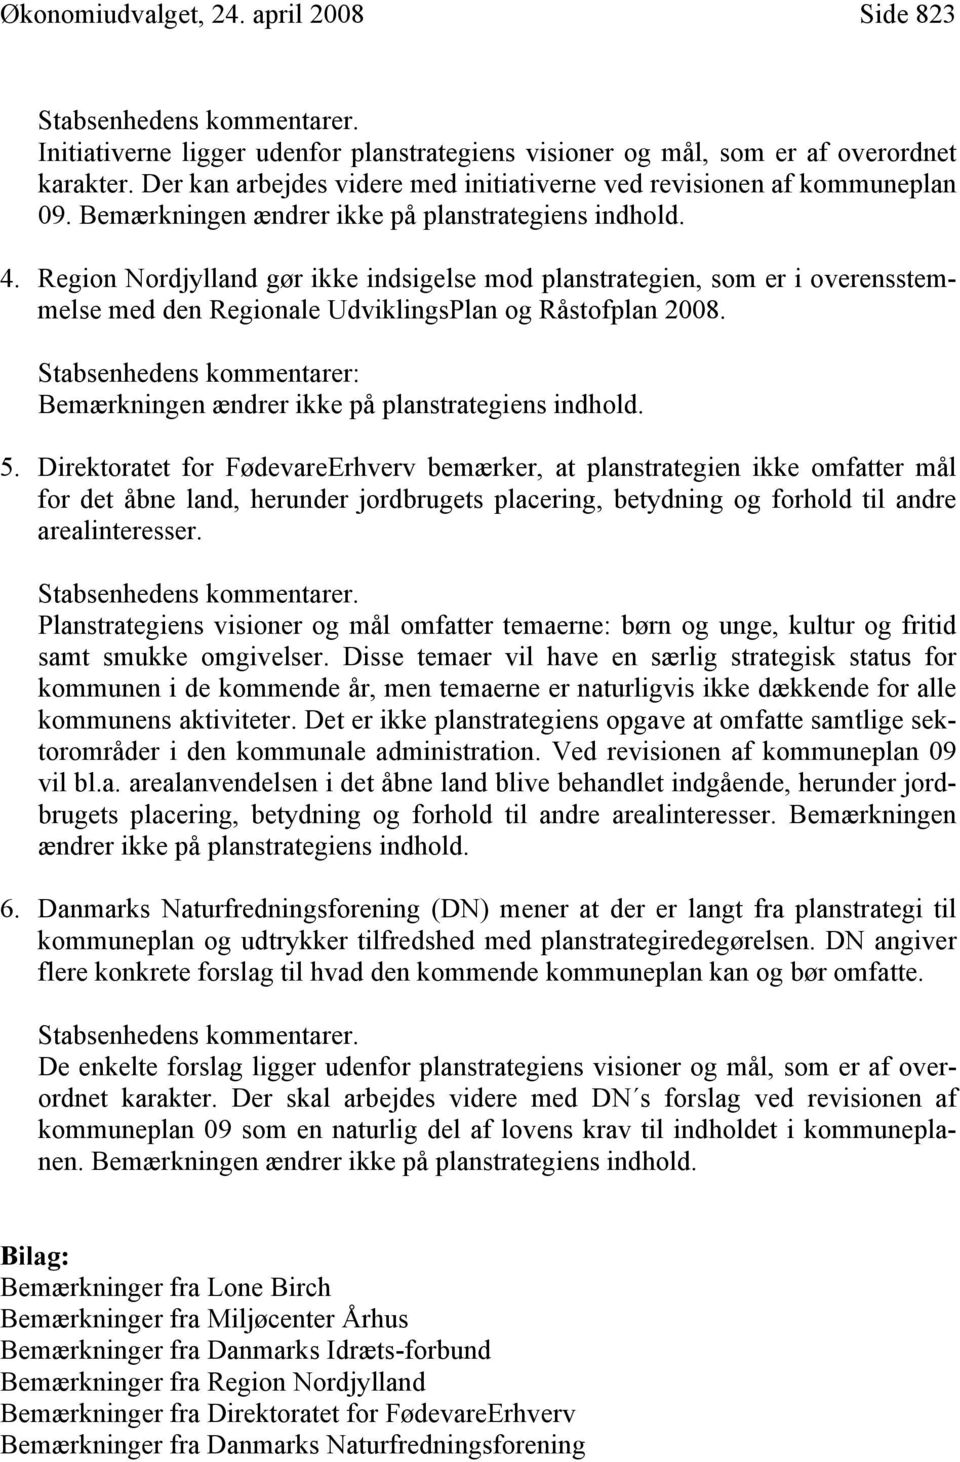 Region Nordjylland gør ikke indsigelse mod planstrategien, som er i overensstemmelse med den Regionale UdviklingsPlan og Råstofplan 2008.